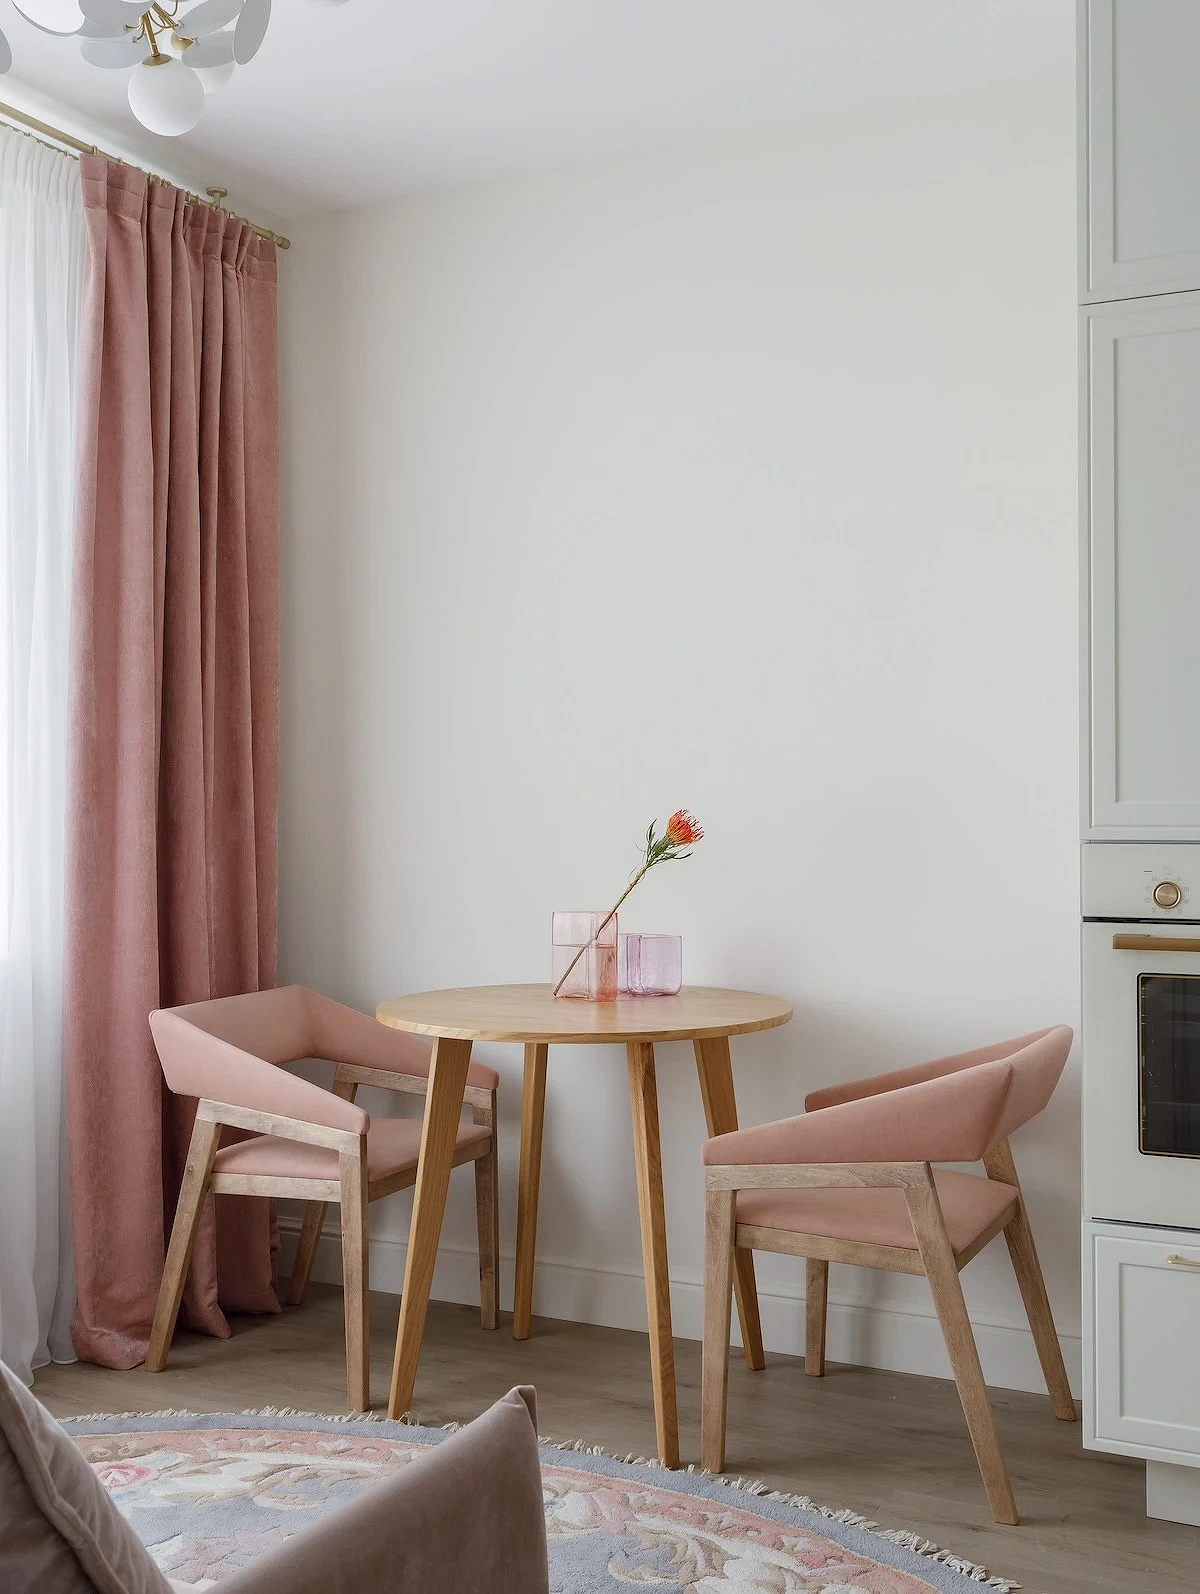 Как расставить мебель в кухне-гостиной? 9 удачных планировок от дизайнеров19